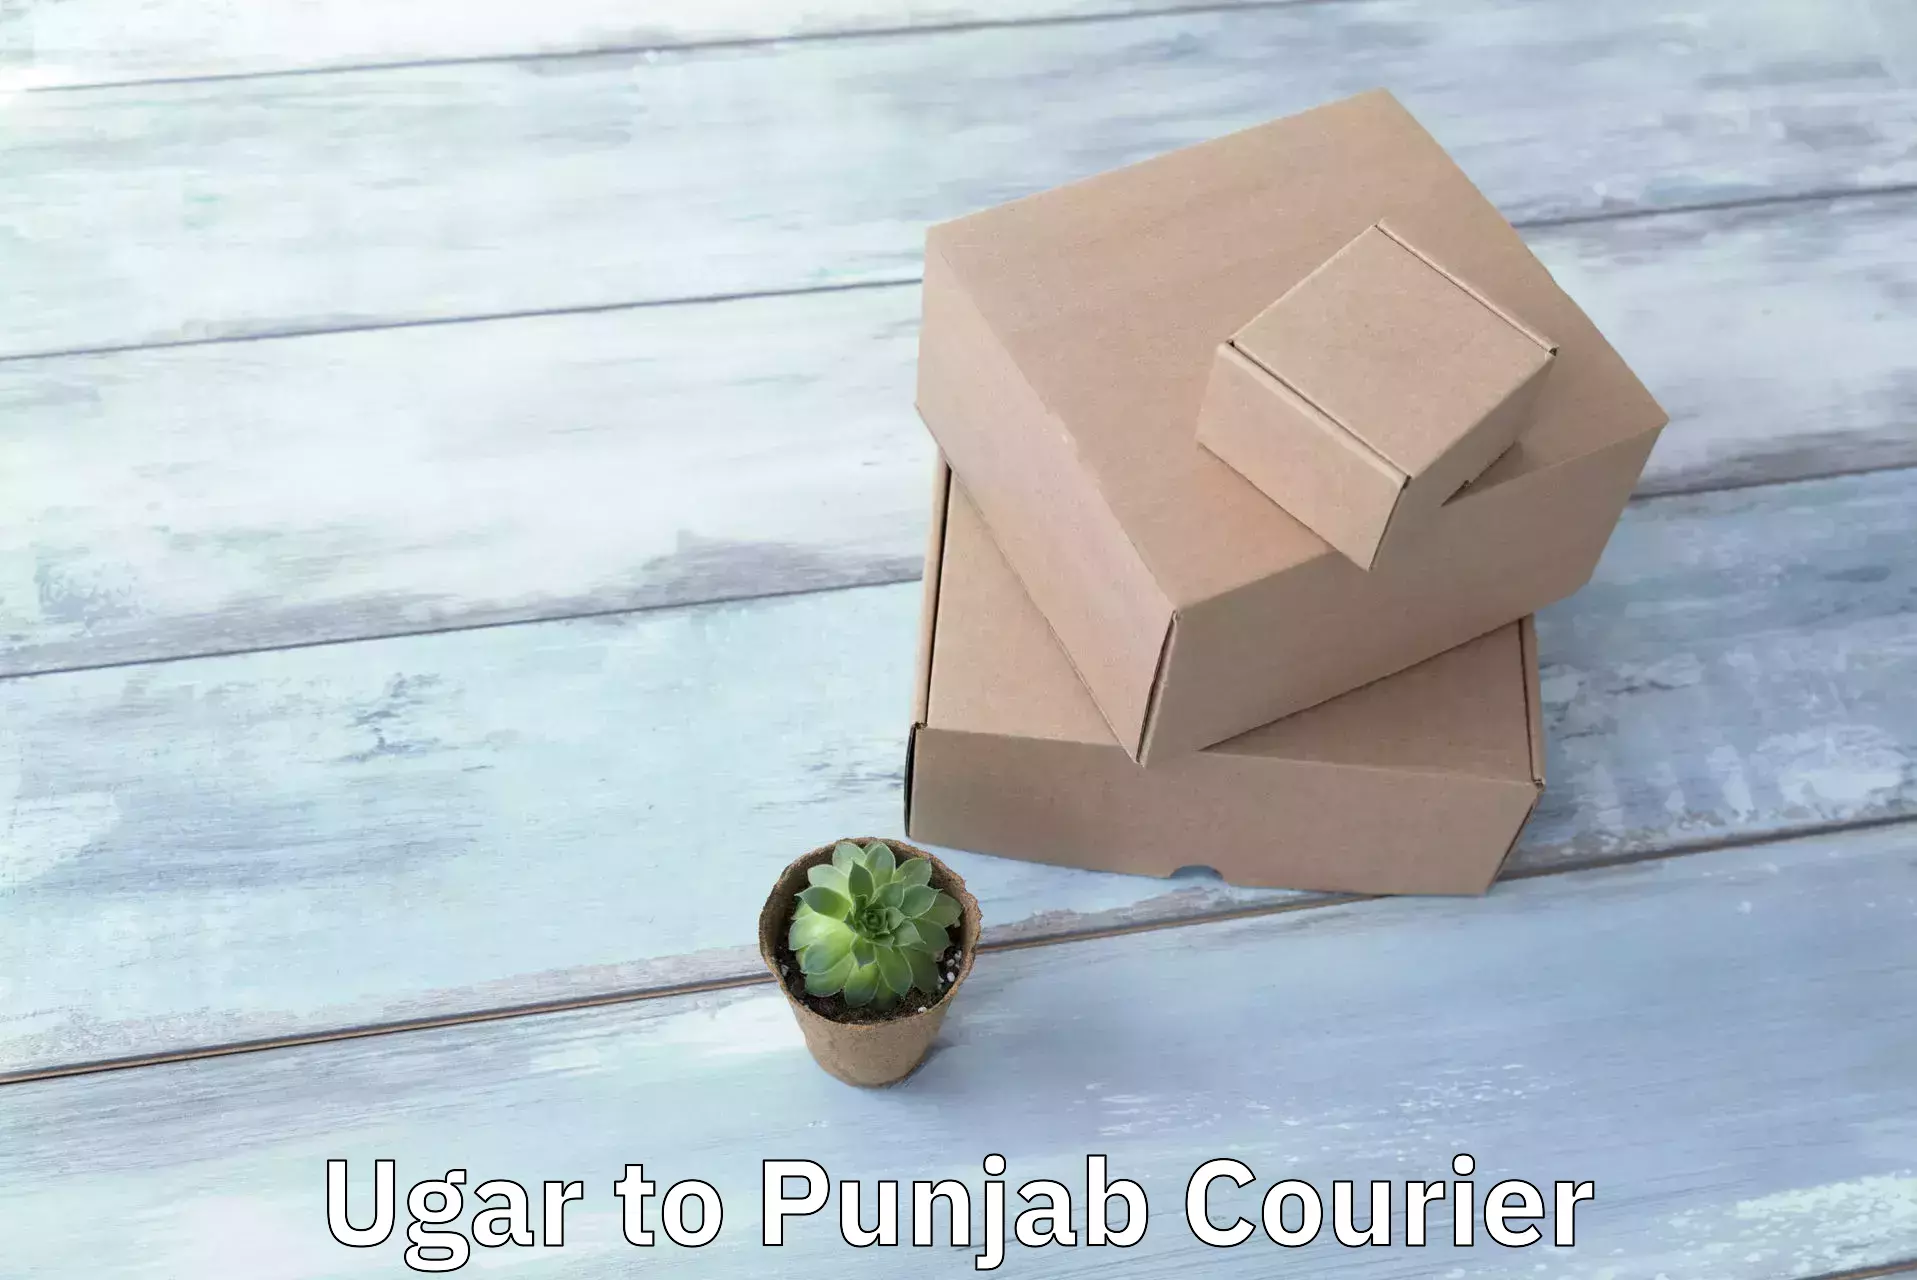 Comprehensive parcel tracking Ugar to Punjab